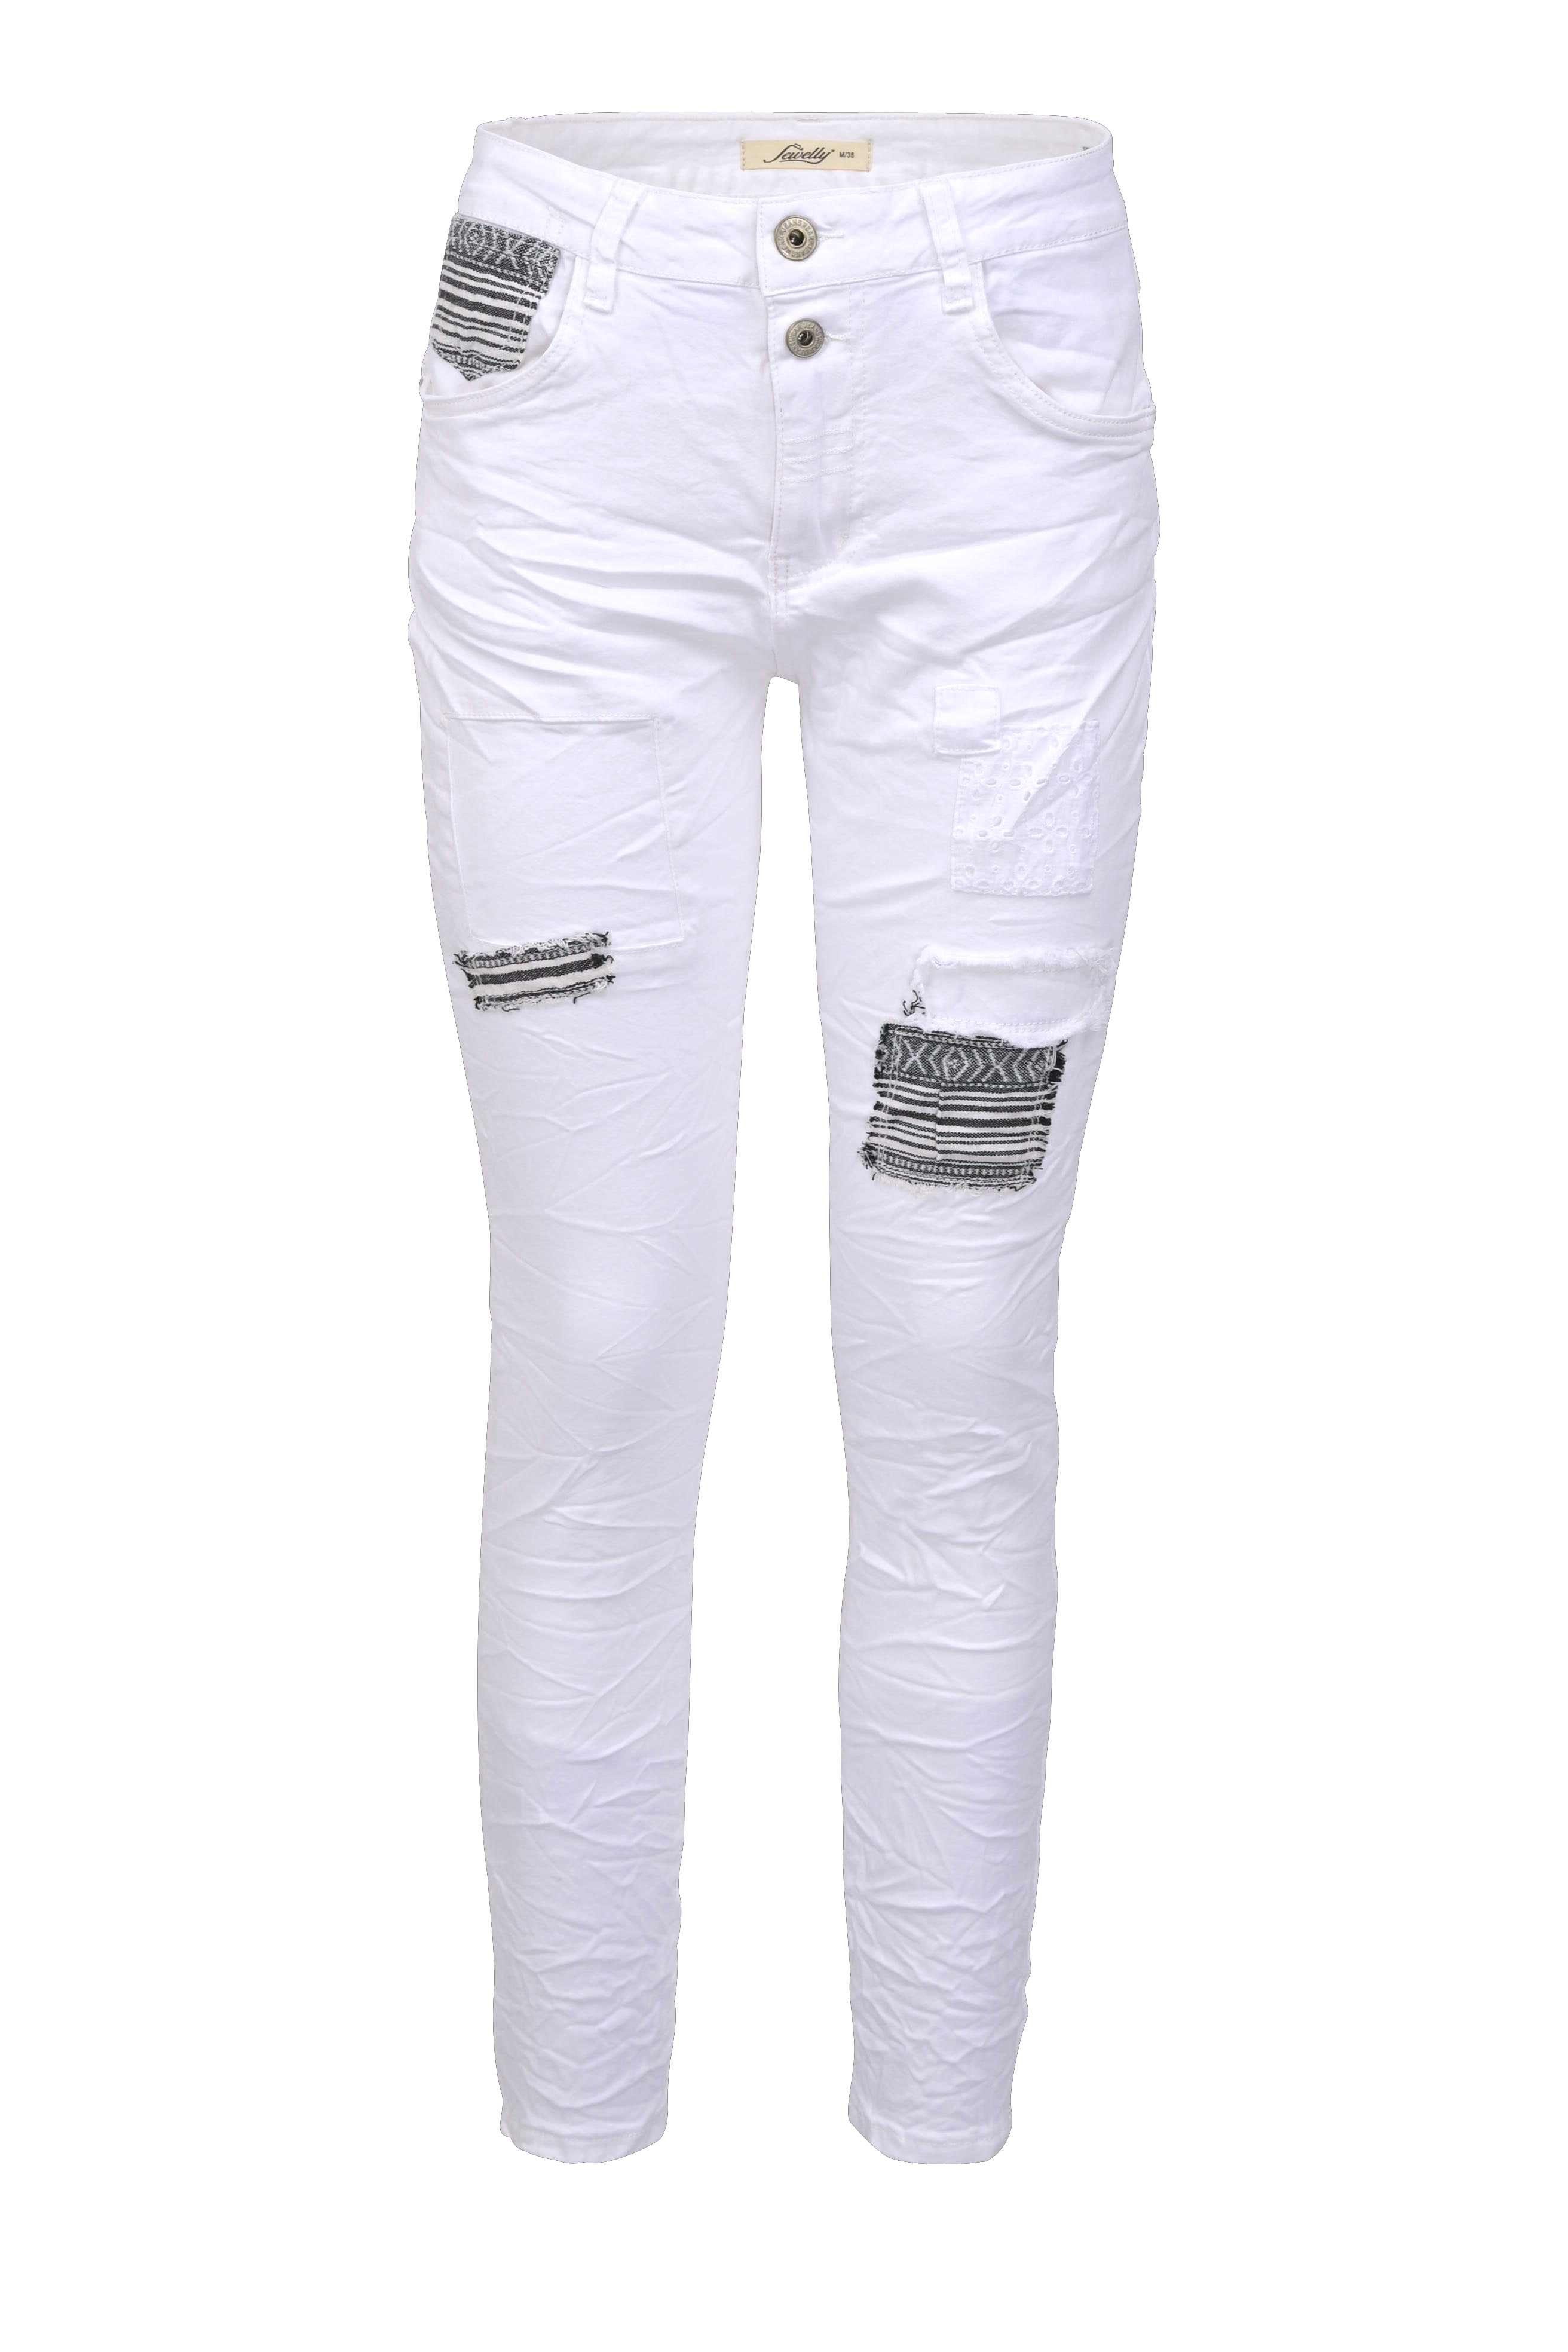 Jewelly Regular-fit-Jeans Stretch Boyfriend Jeans - Patches Aufnäher - Weiß